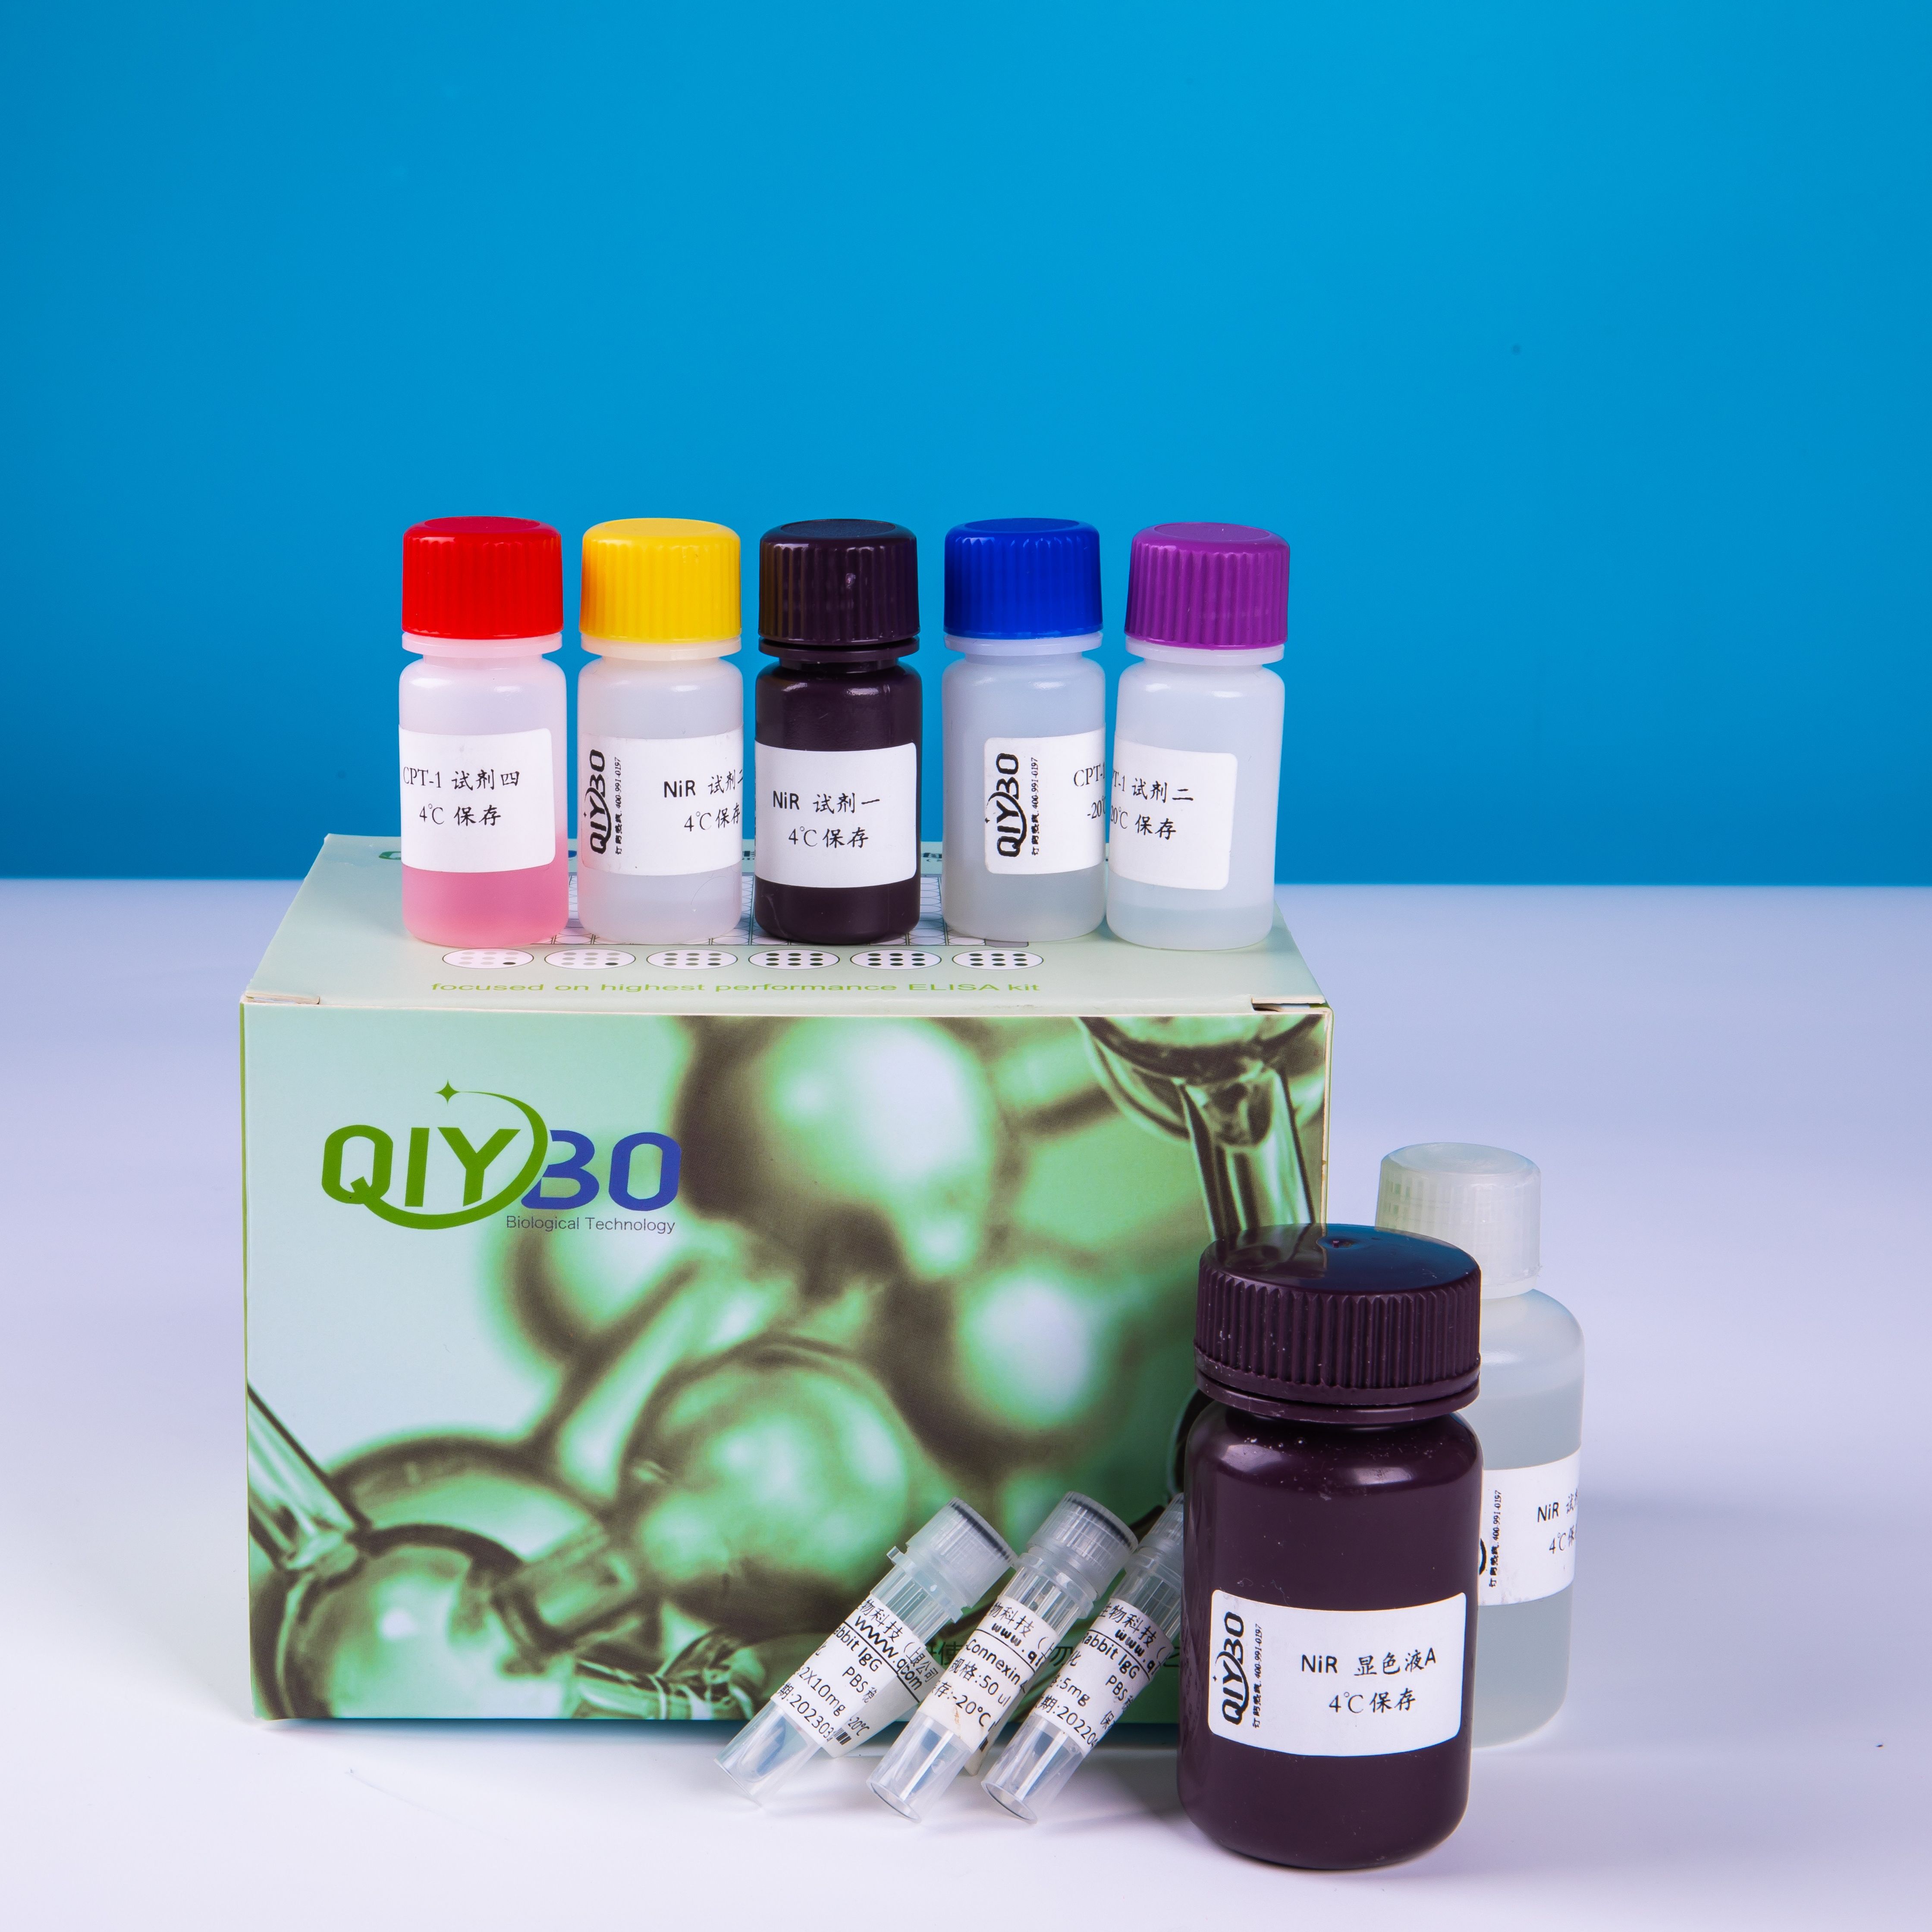 PAF乙酰水解酶抑制剂筛选分析试剂盒